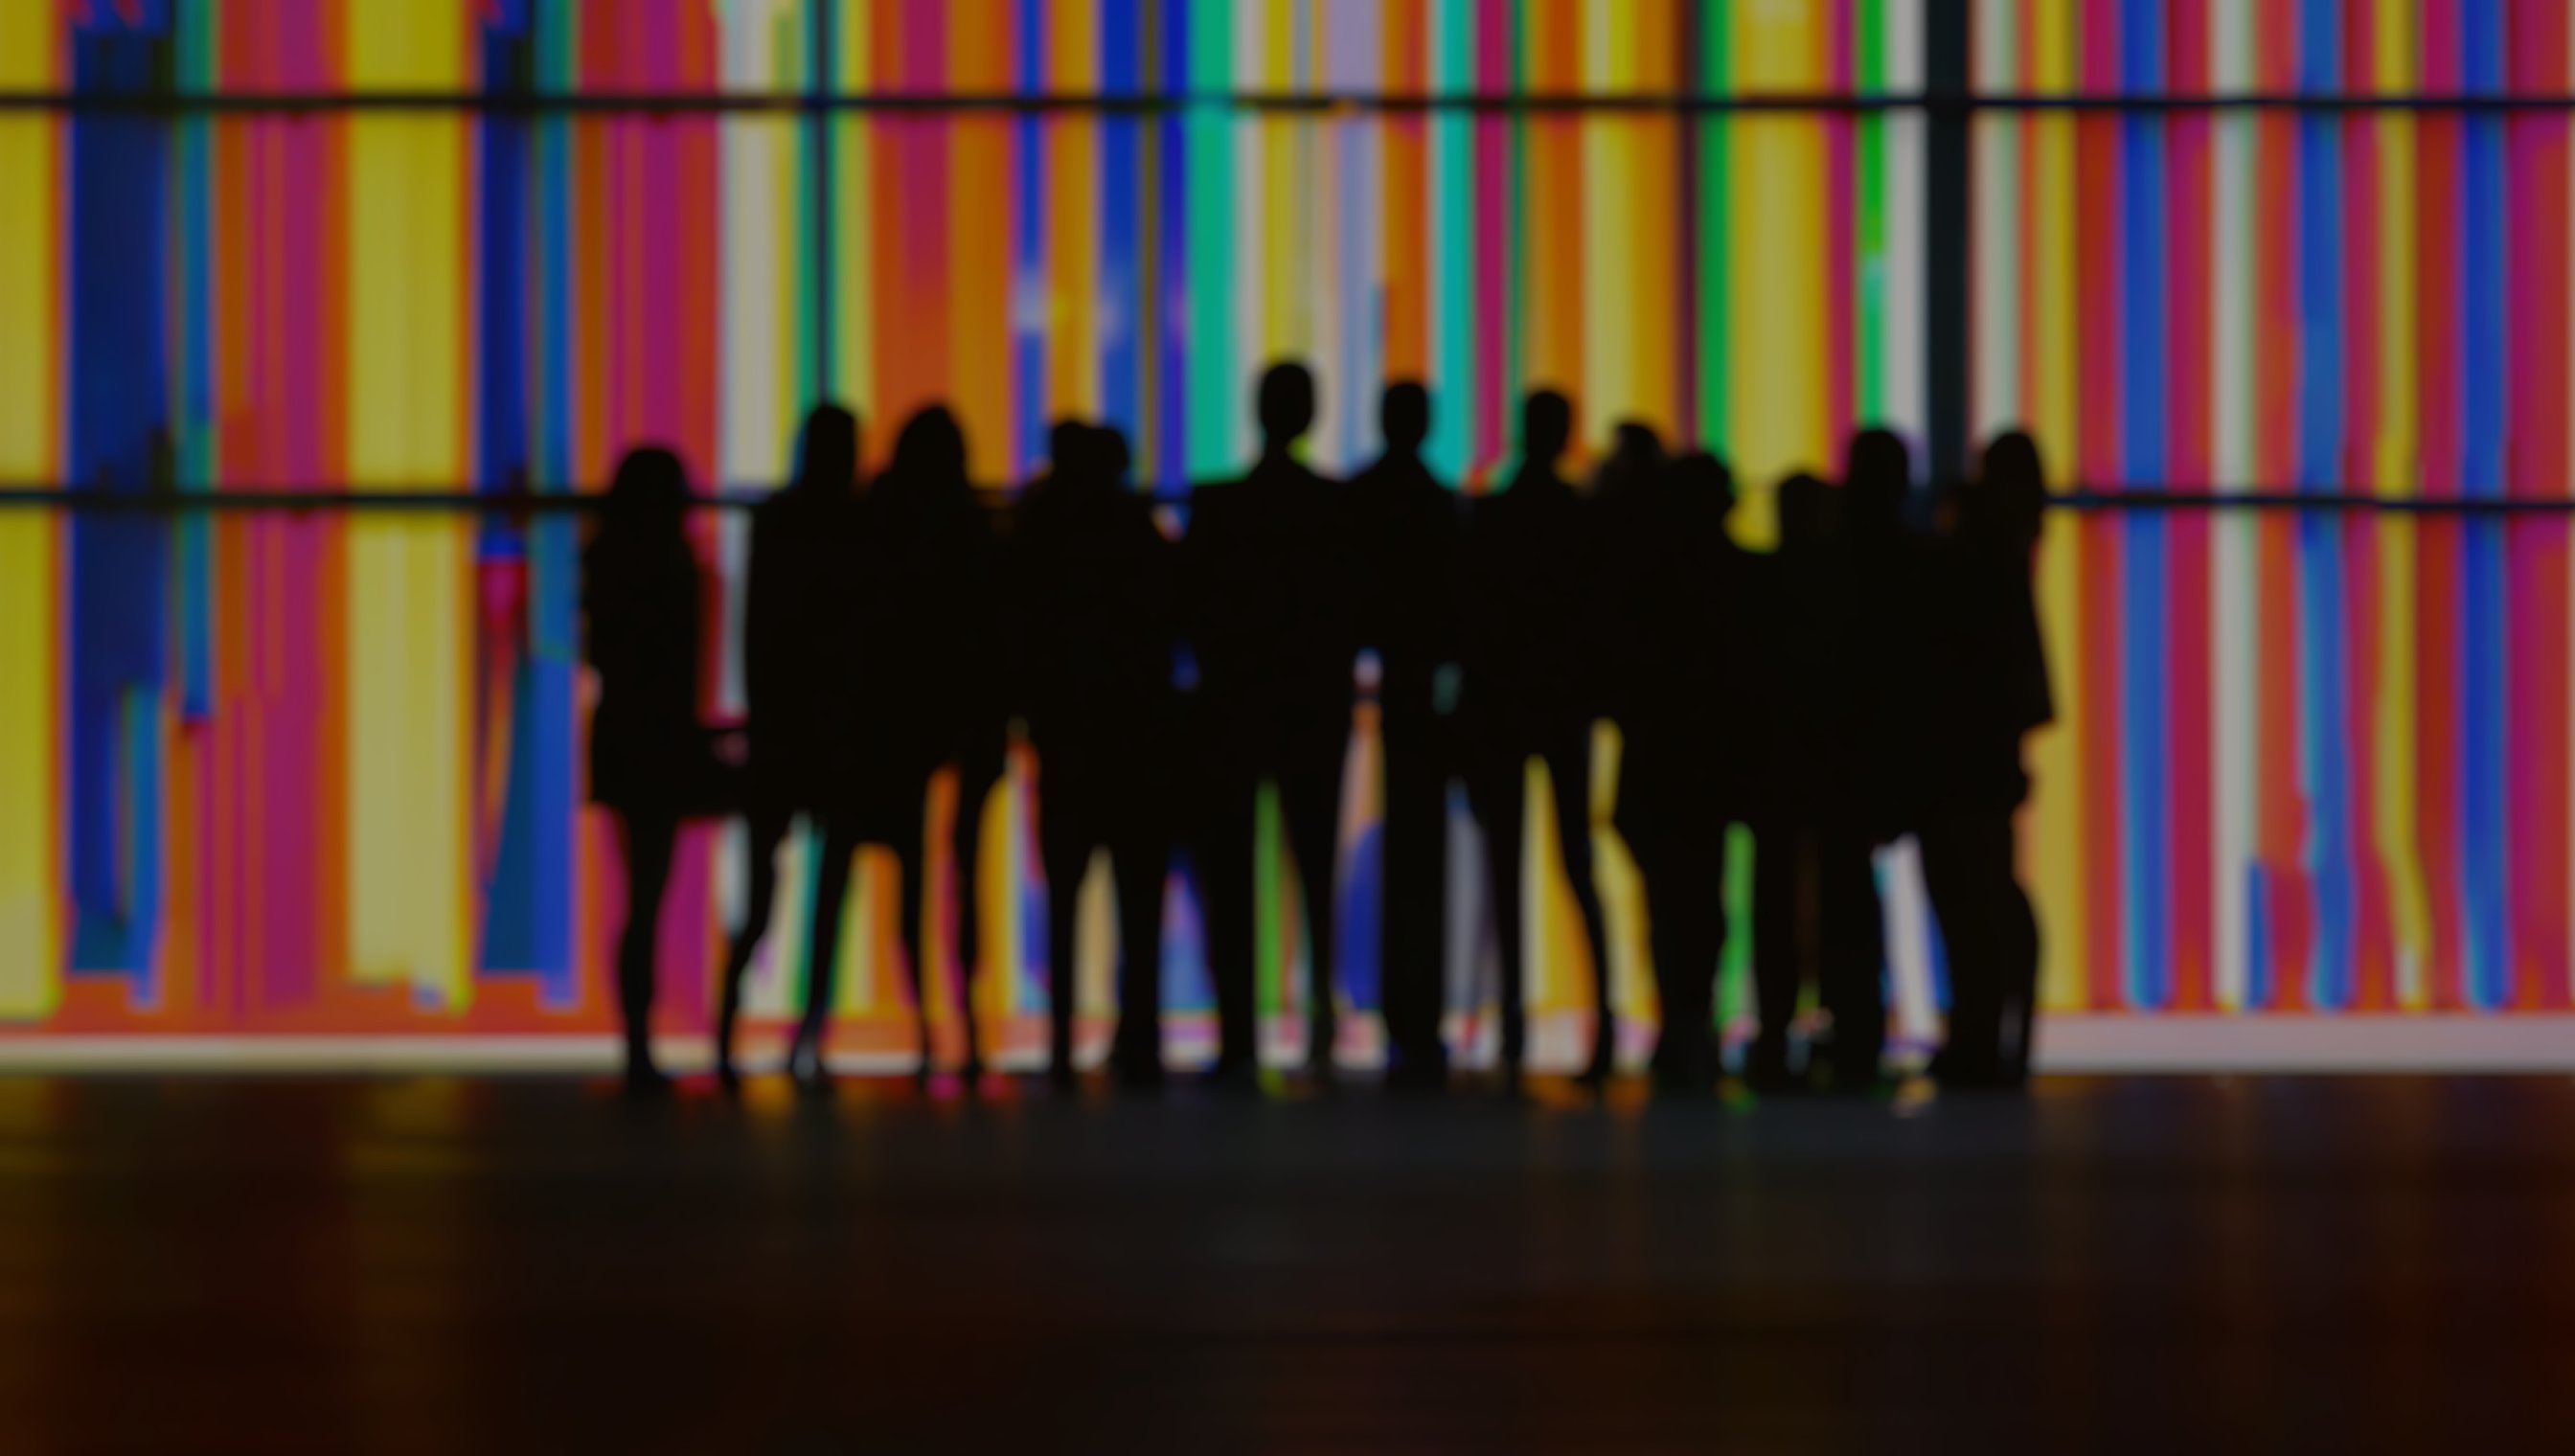 Gruppe mennesker, konturer i svart som er bluret, foran en vegg med striper i regnbuefarger.